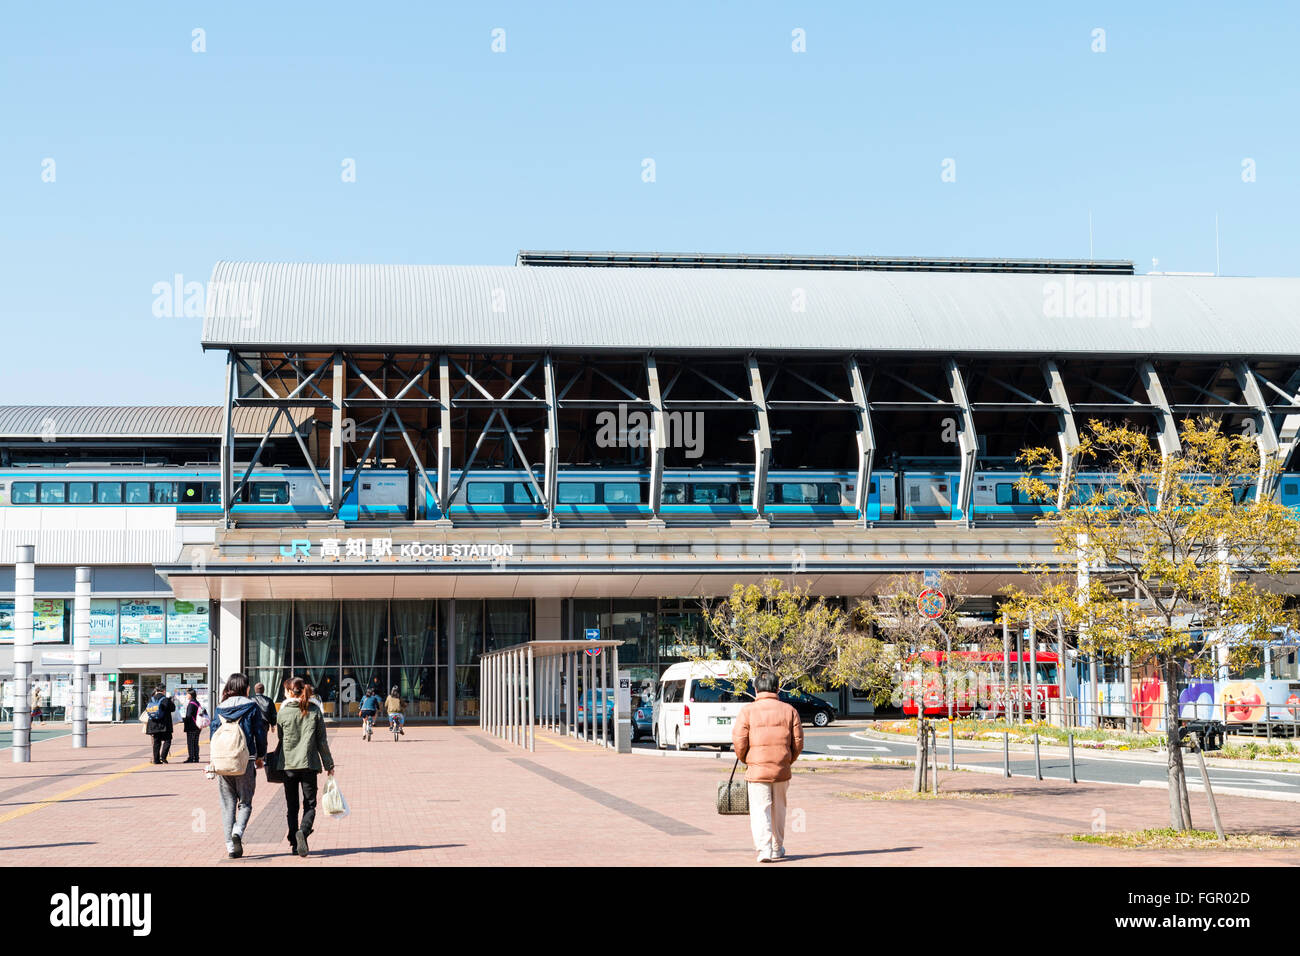 JR Kochi city station moderne au Japon. Premier plan, taxi, location de pickup et Tosaden Kotsu streetcar de tram. Ciel bleu, soleil éclatant. Banque D'Images